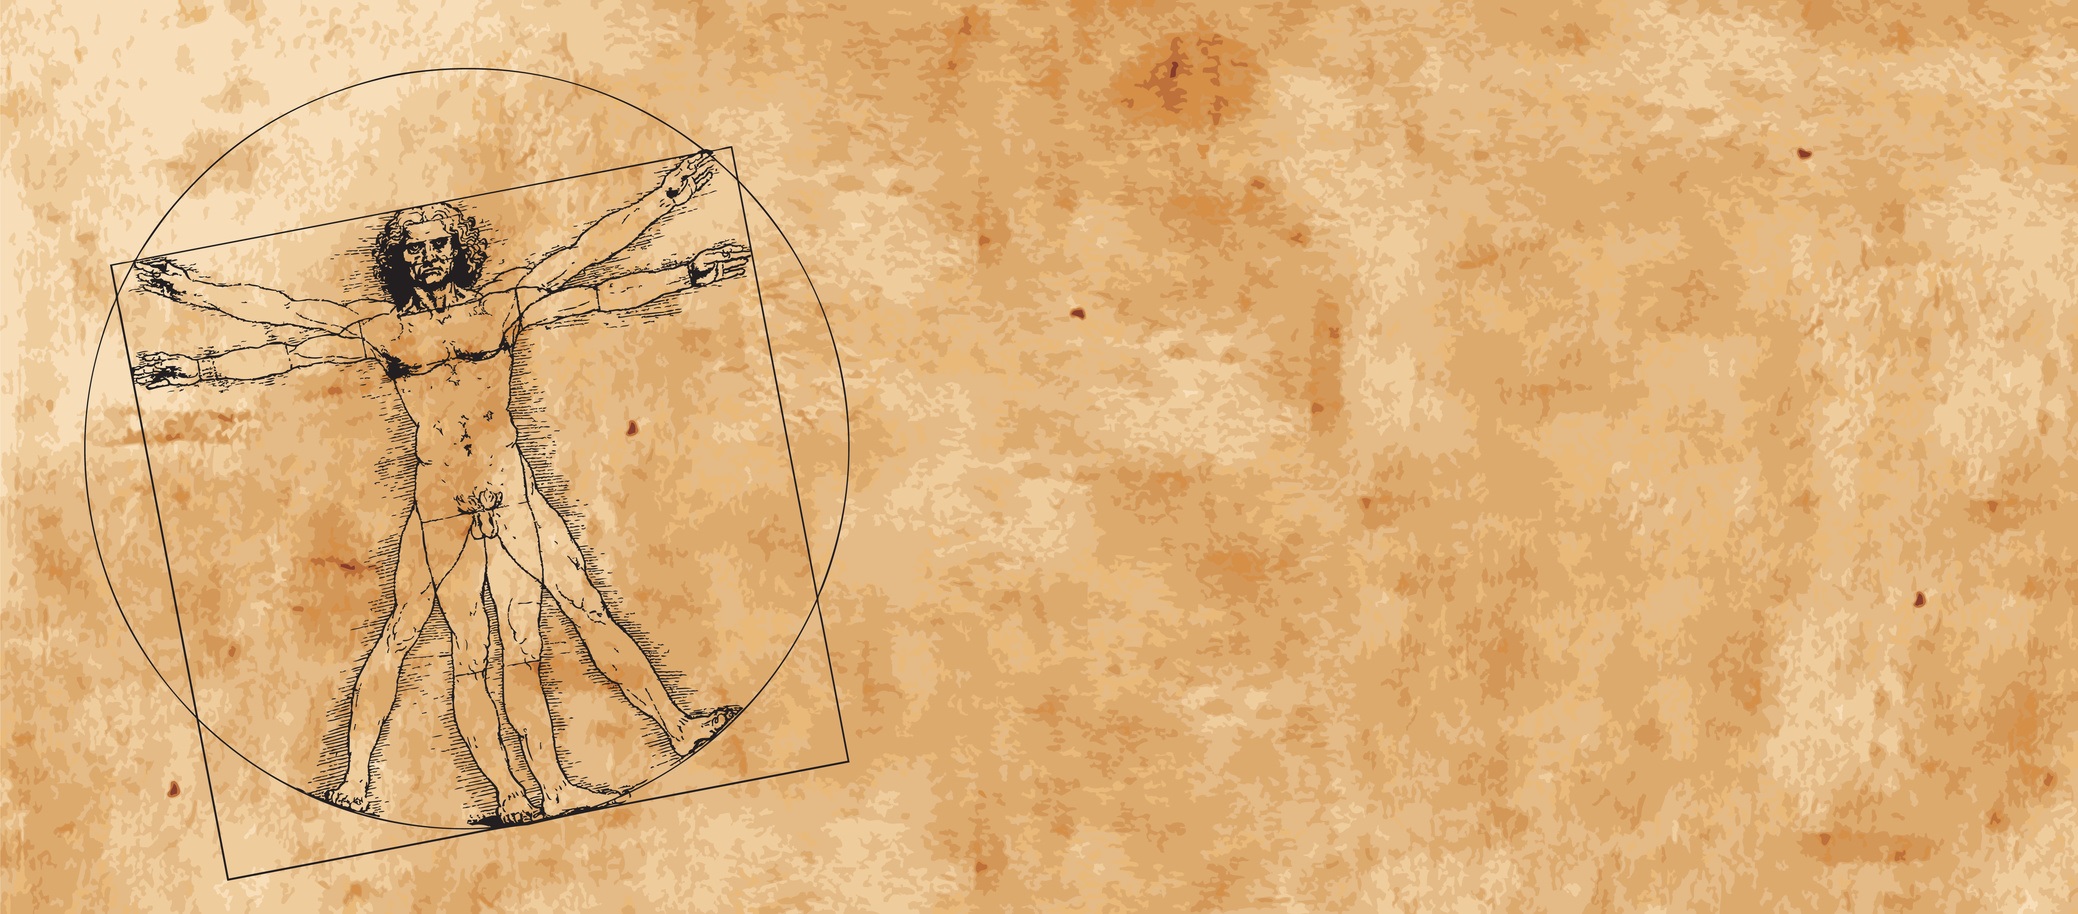 Léonard de Vinci est né à Vinci le 15 avril 1452 et est mort à Amboise le 2 mai 1519. Il fut à la fois peintre florentin, scientifique, inventeur, anatomiste, sculpteur, architecte, urbaniste, botaniste, musicien, poète, philosophe et écrivain. Un croquis d'un des ses manuscrits est le premier témoignage de l'existence des fossiles Paleodictyon. © HP_Photo, Fotolia